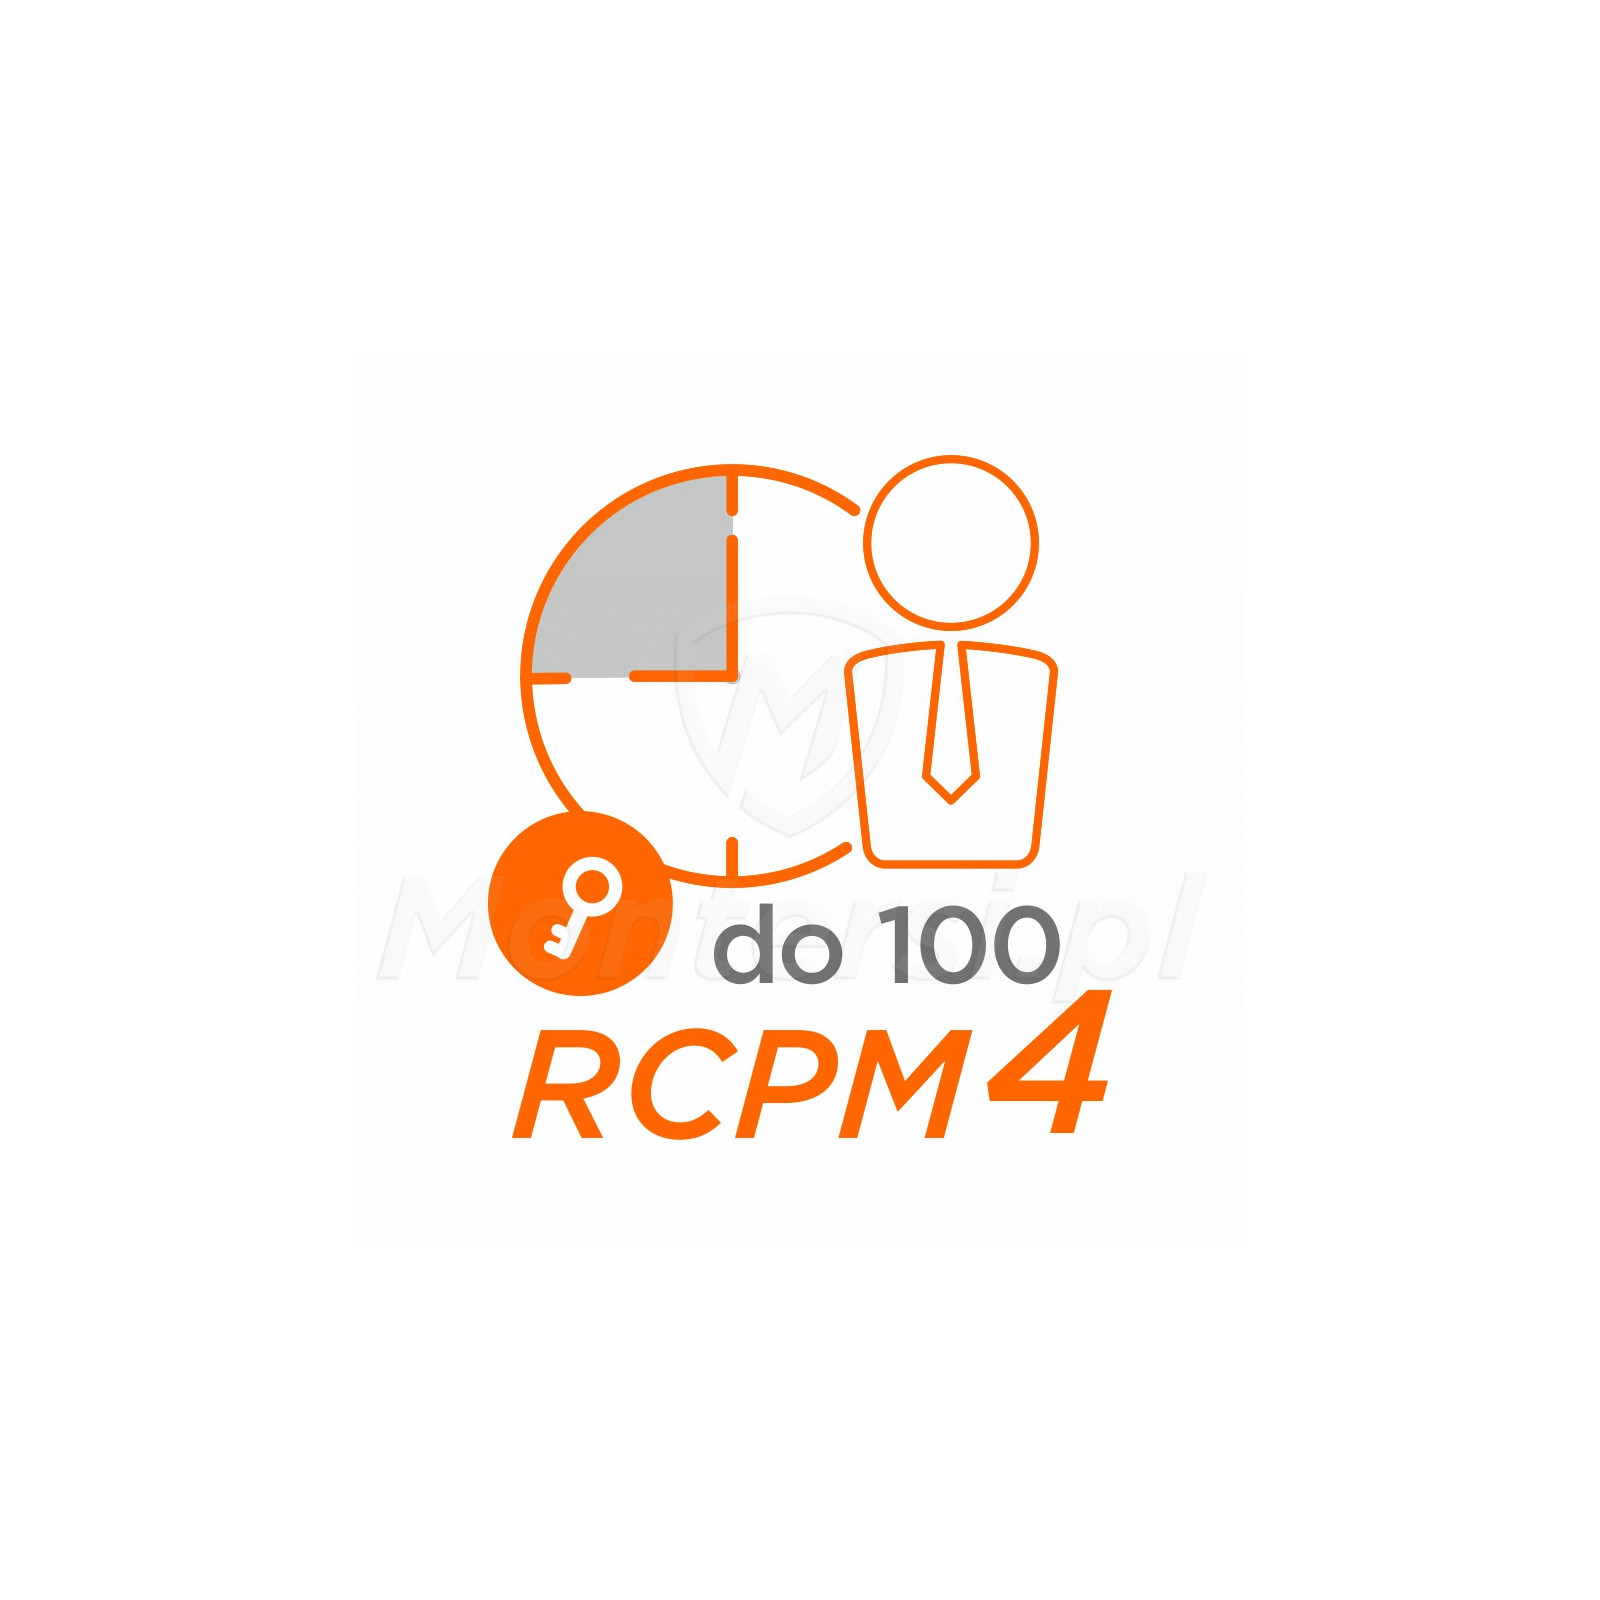 RCPM4-100 - Klucz licencji RCP Master 4, 100 pracowników